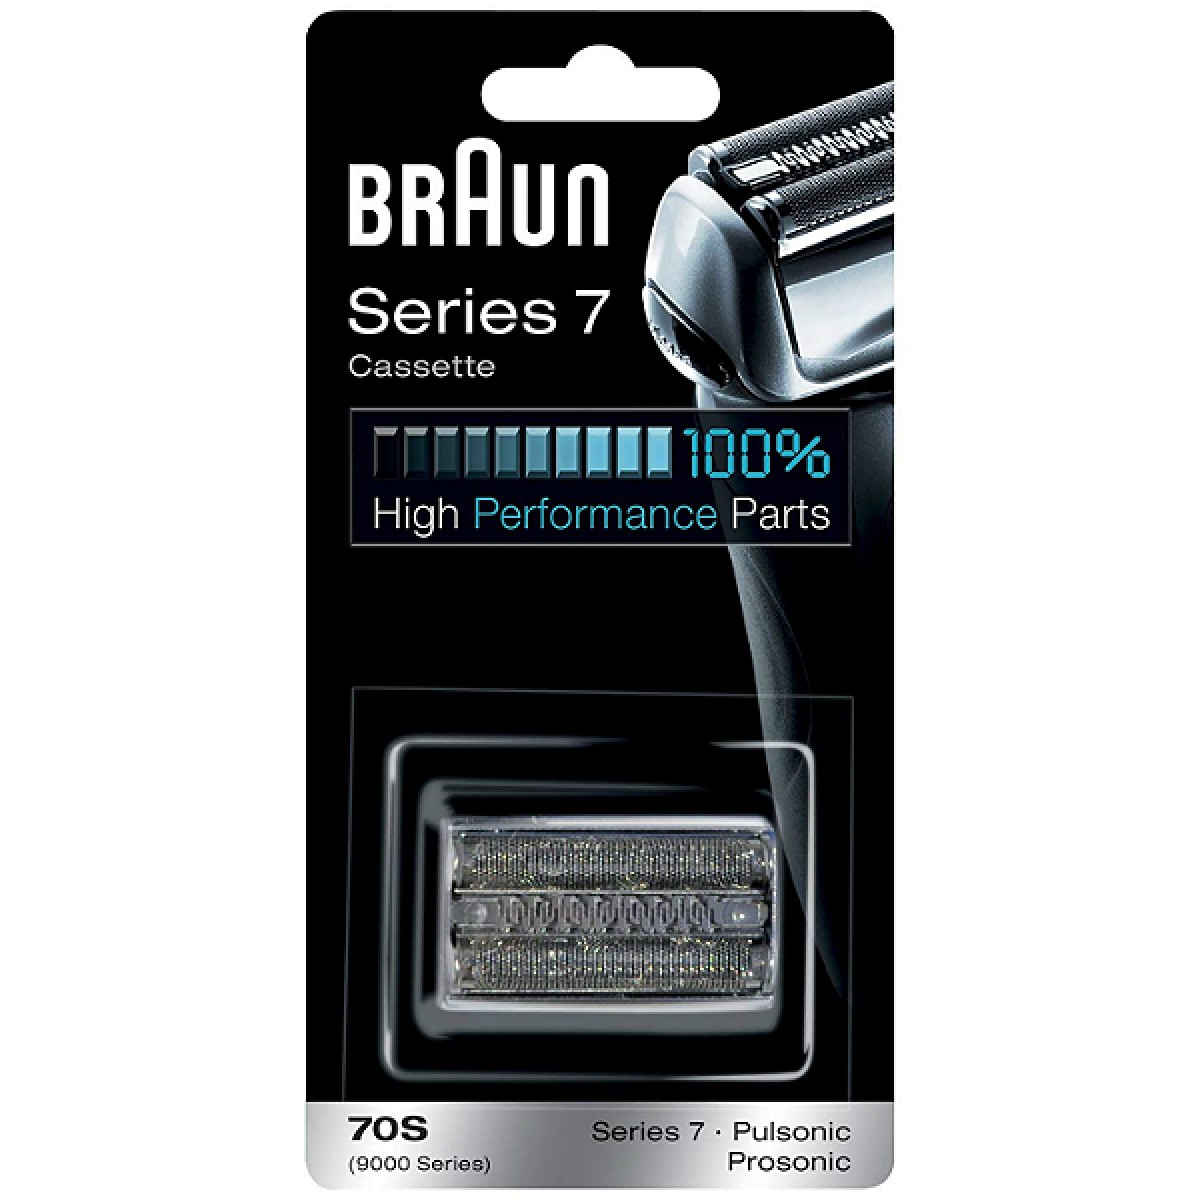 Ανταλλακτικό Ξυριστικής Μηχανής Series 7 Braun 70S Silver